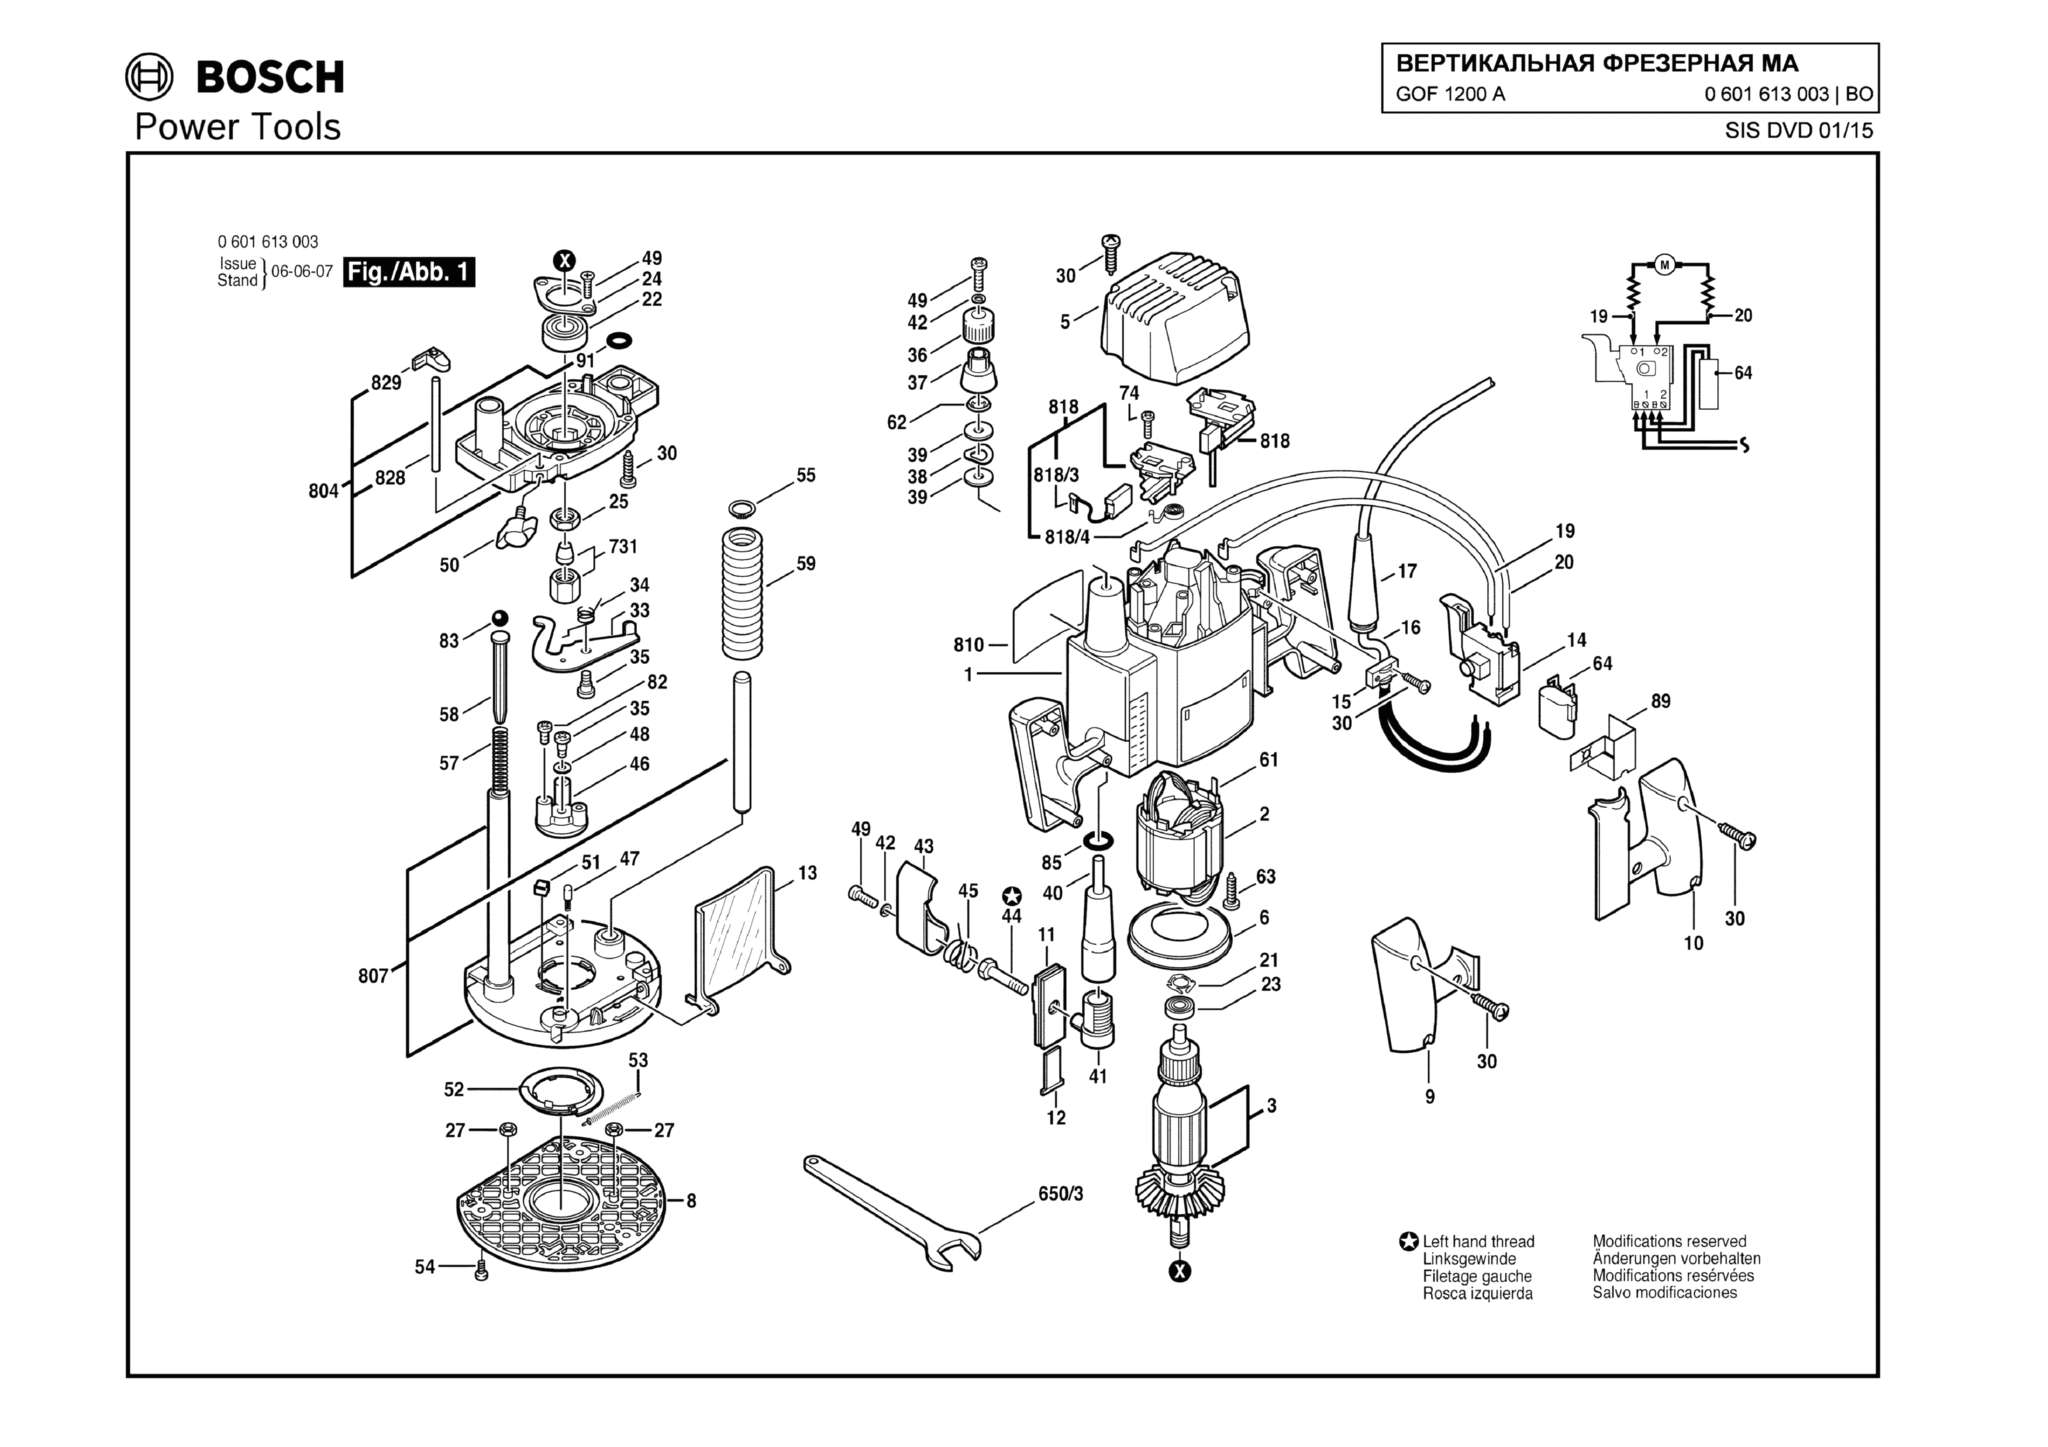 Запчасти, схема и деталировка Bosch GOF 1200 A (ТИП 0601613003)